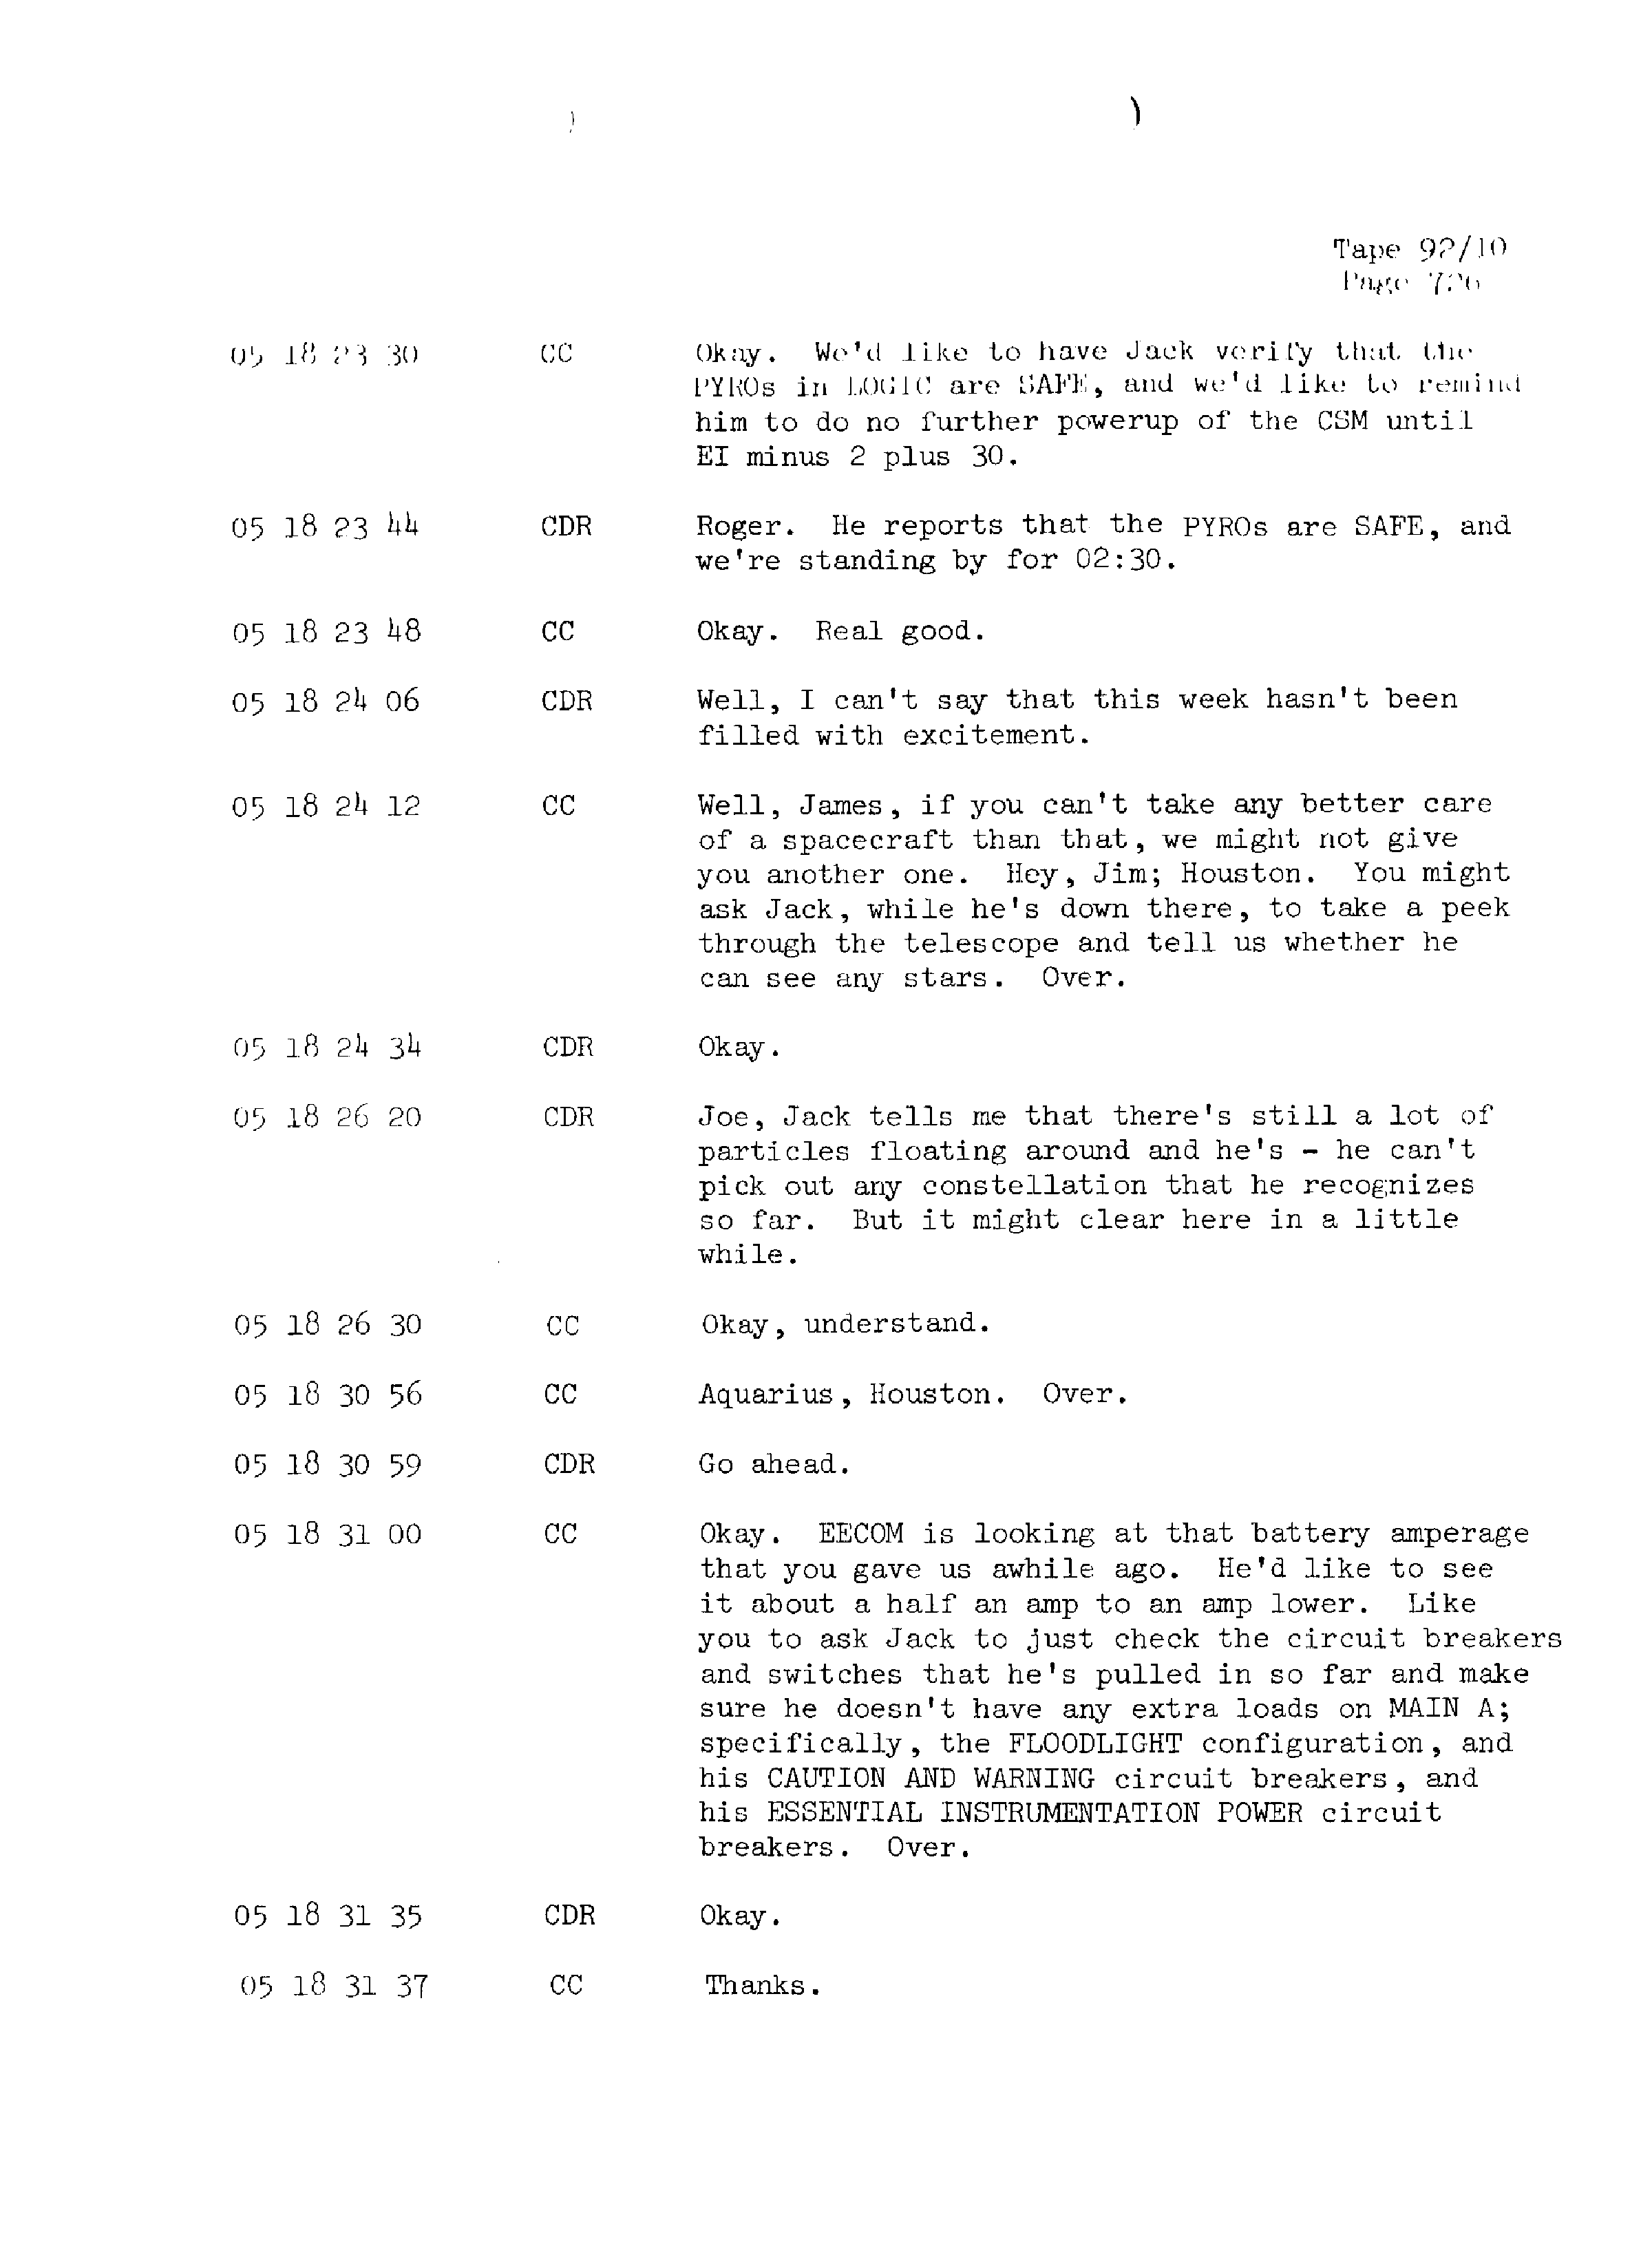 Page 733 of Apollo 13’s original transcript